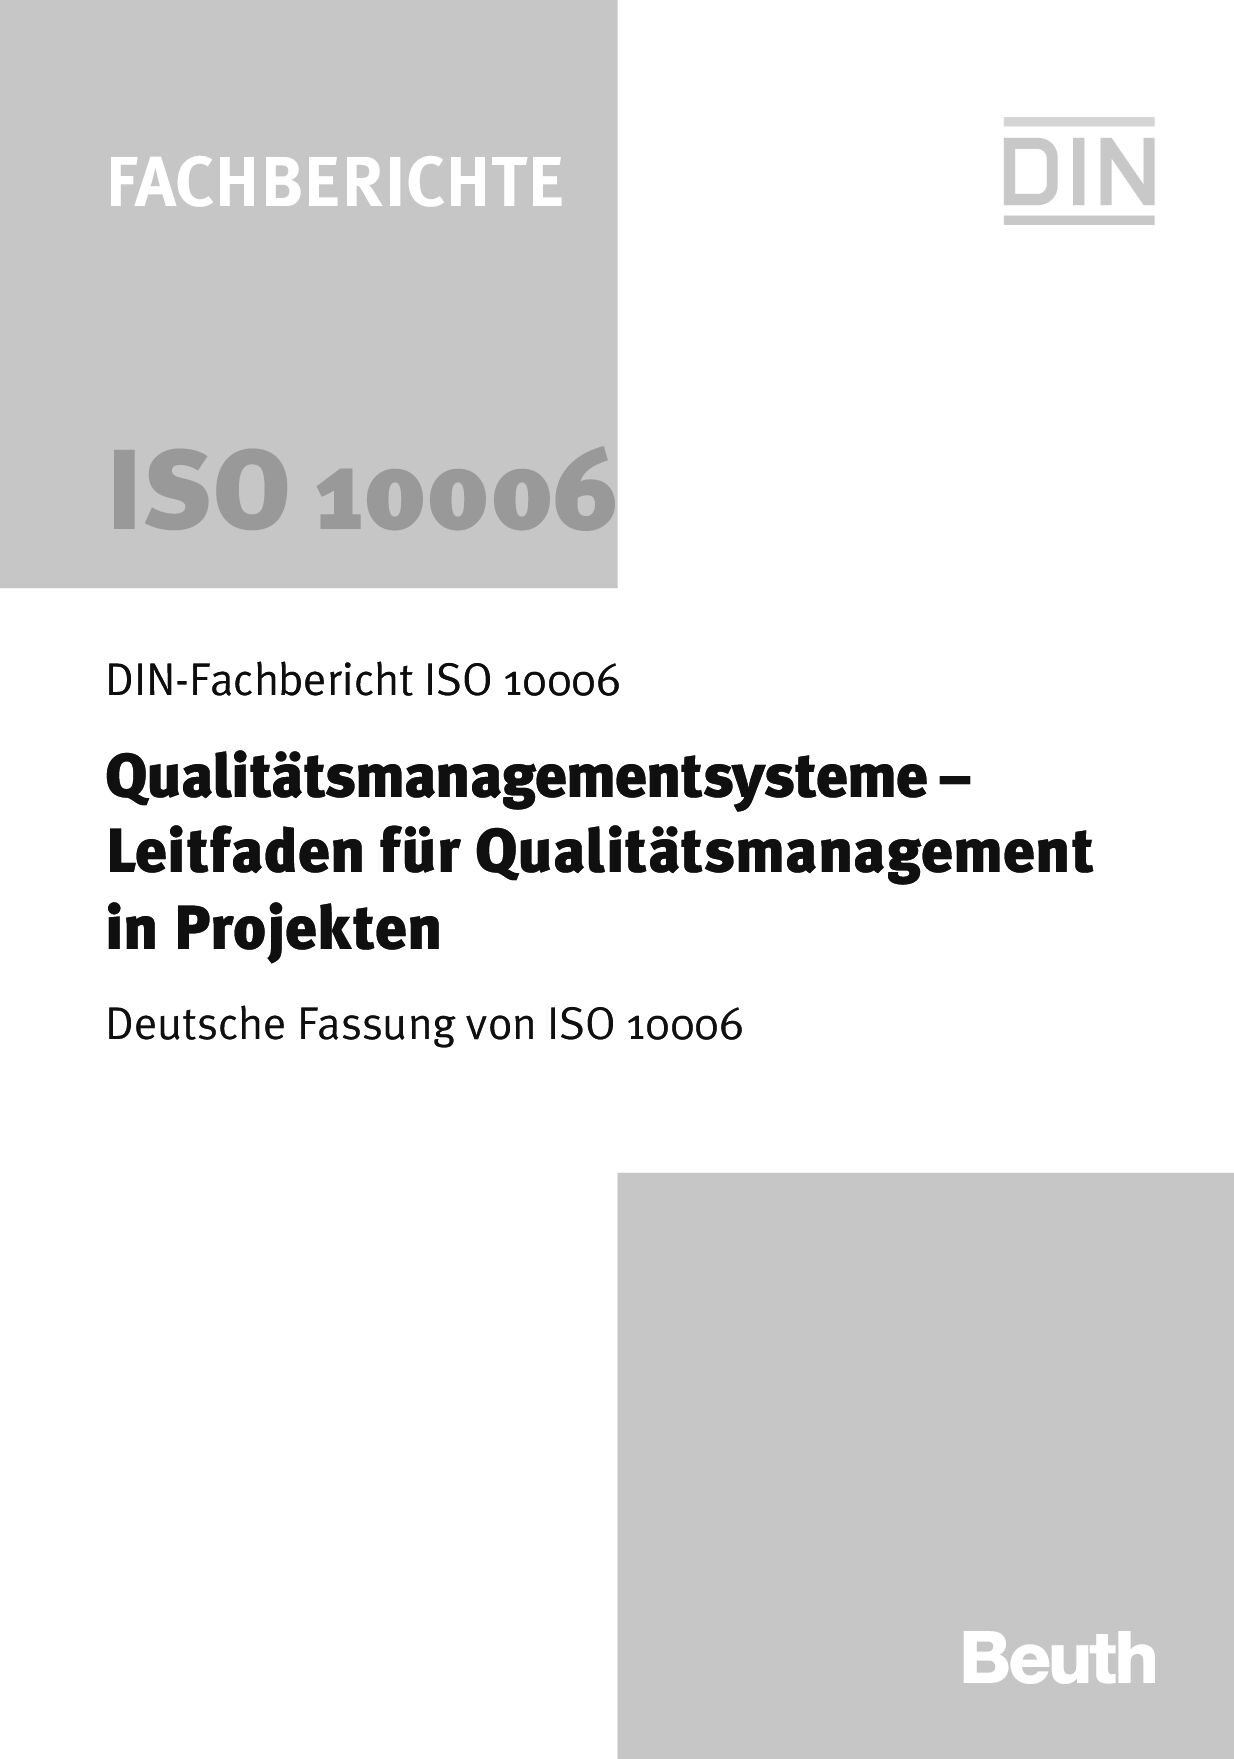 DIN-Fachbericht ISO 10006:2004封面图